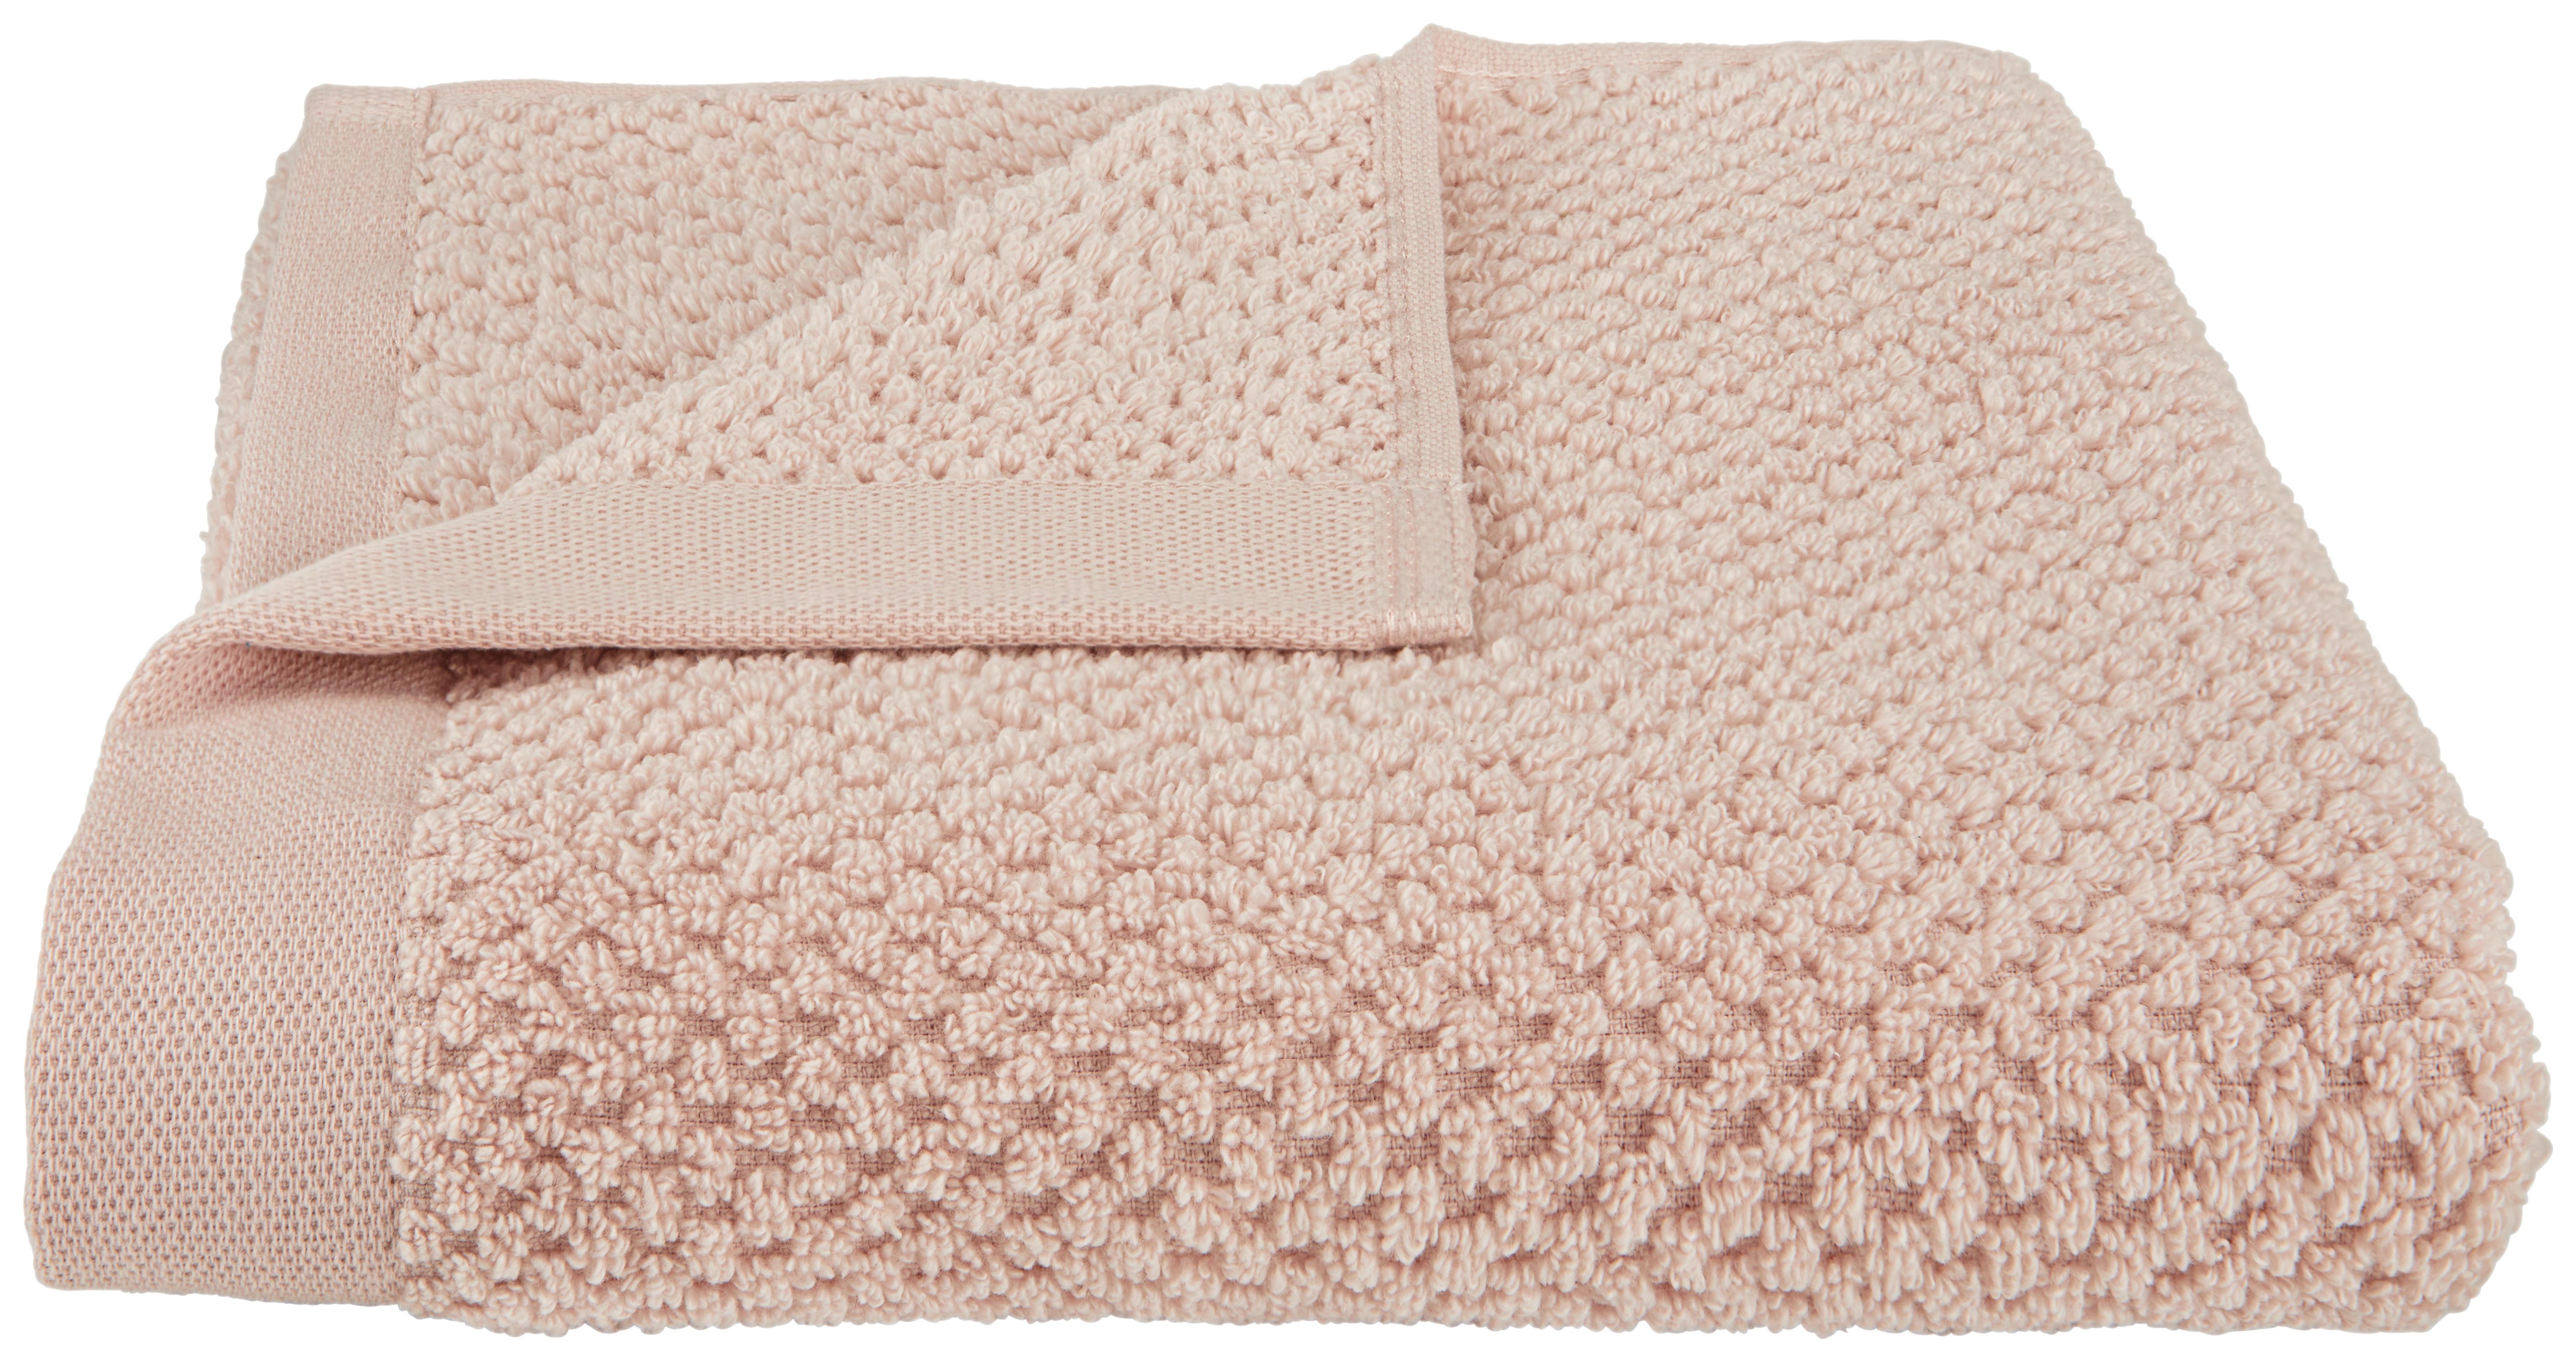 Kéztörlő Luise 50/100cm - Rózsaszín, konvencionális, Textil (50/100cm) - Modern Living